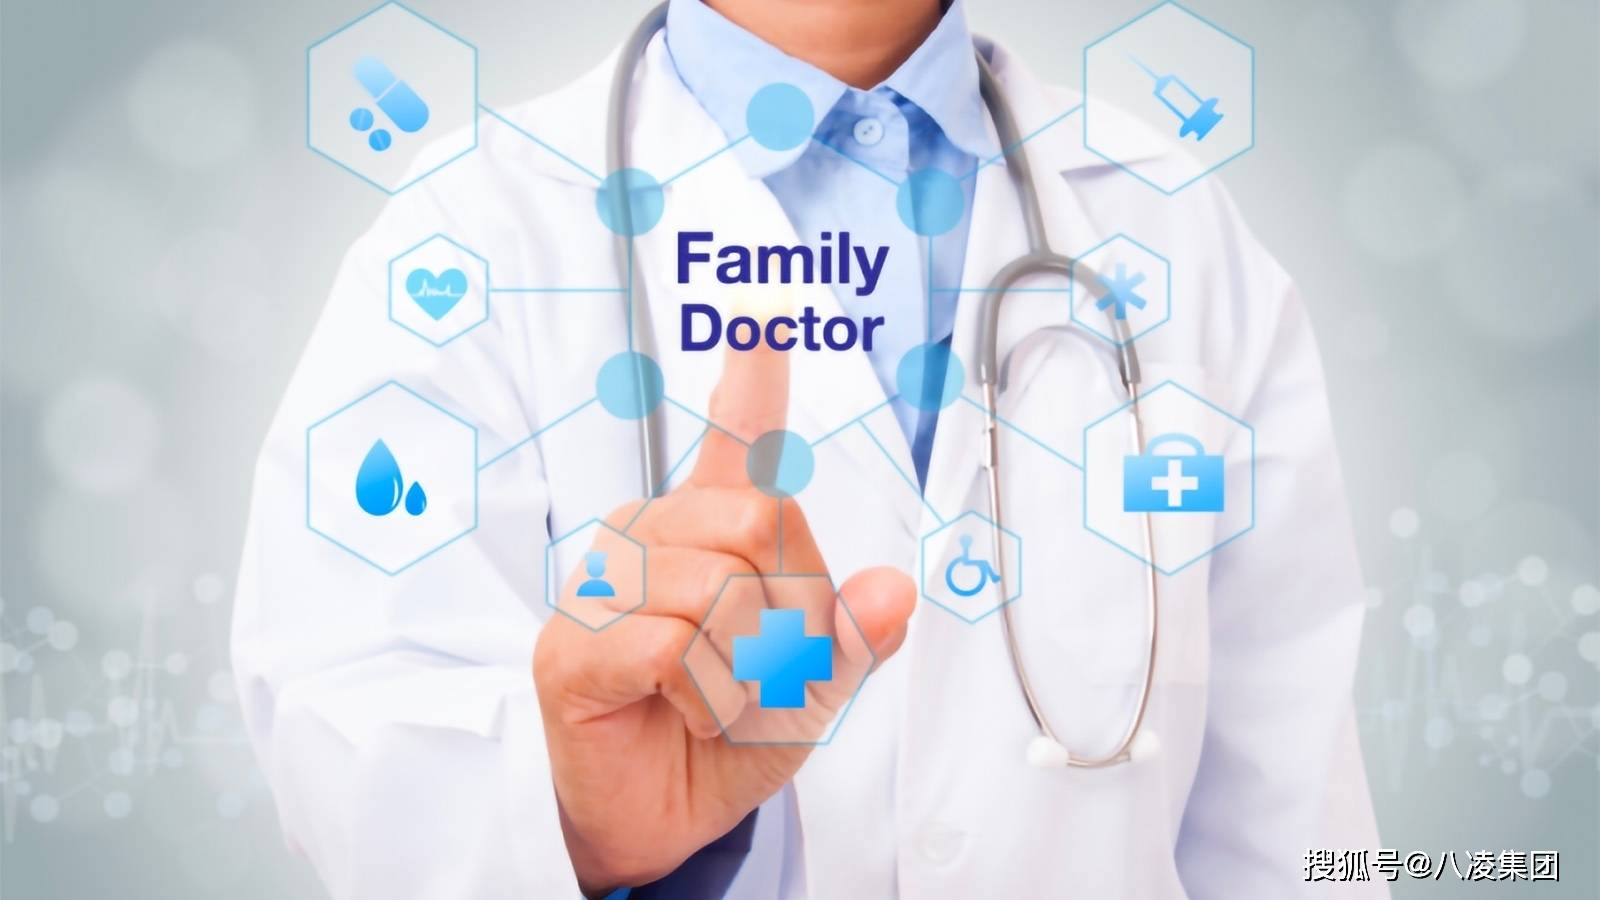 互联网+医疗,开启“家庭医生”服务新时代